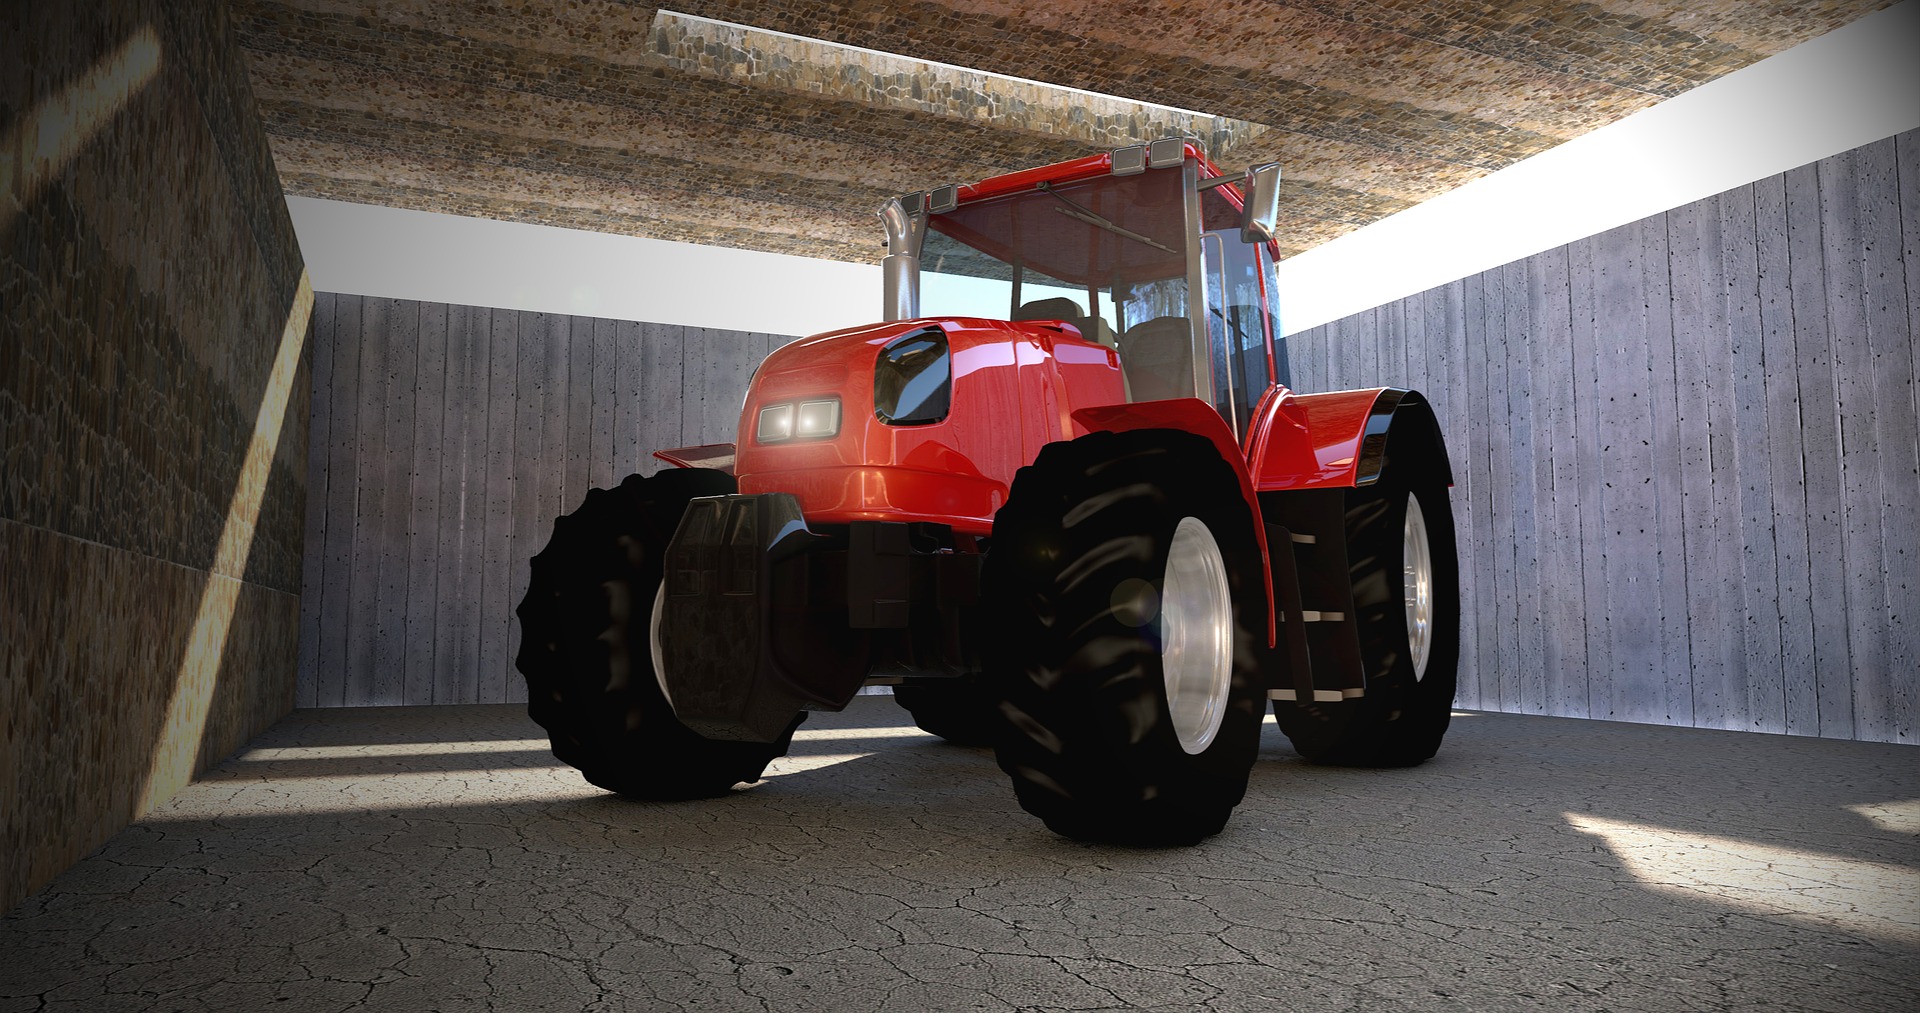 Raspisan IPARD javni poziv za nabavku novog traktora